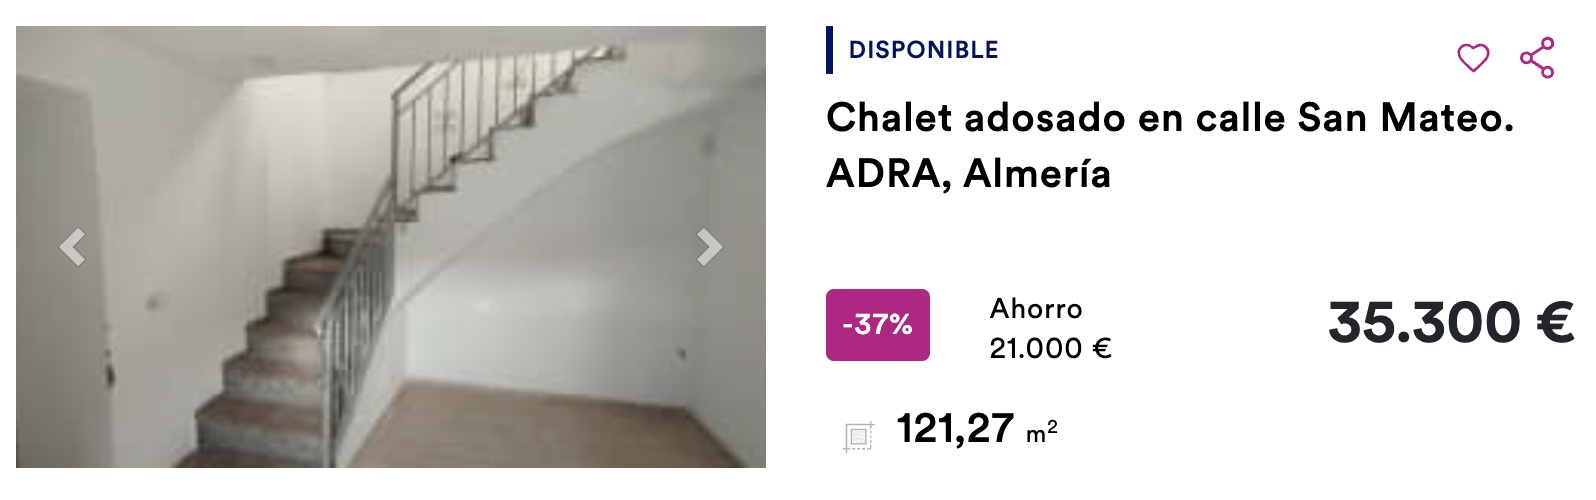 Chalet adosado de BBVA en Adra, Almería